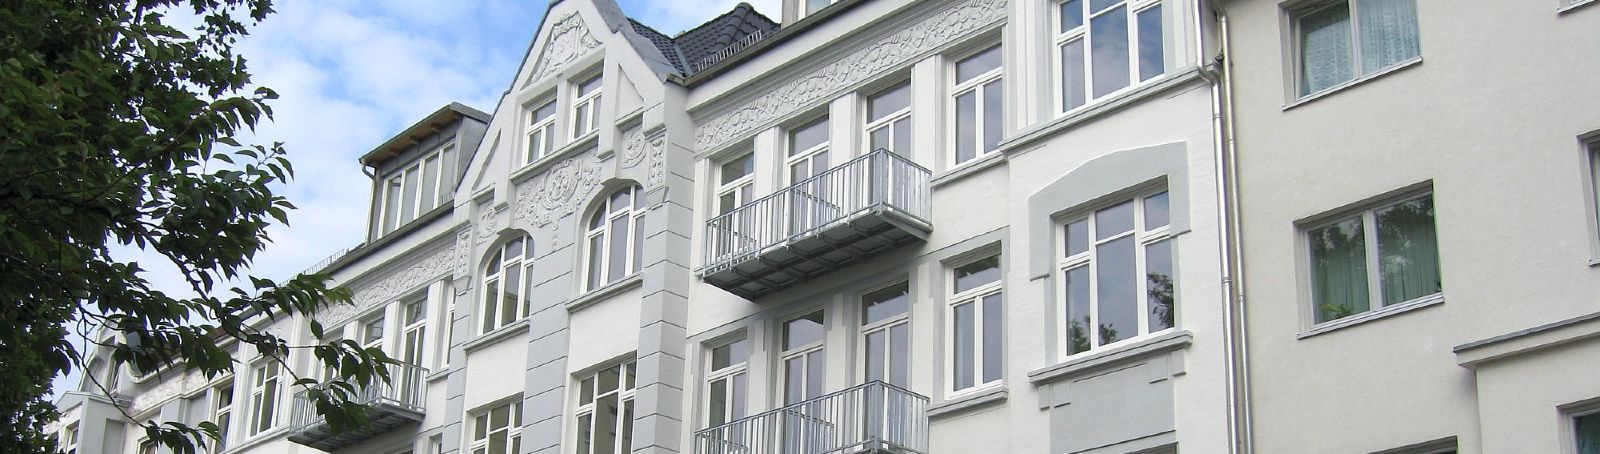 Ansicht einer Fassade nach Sanierung beider Haushälften